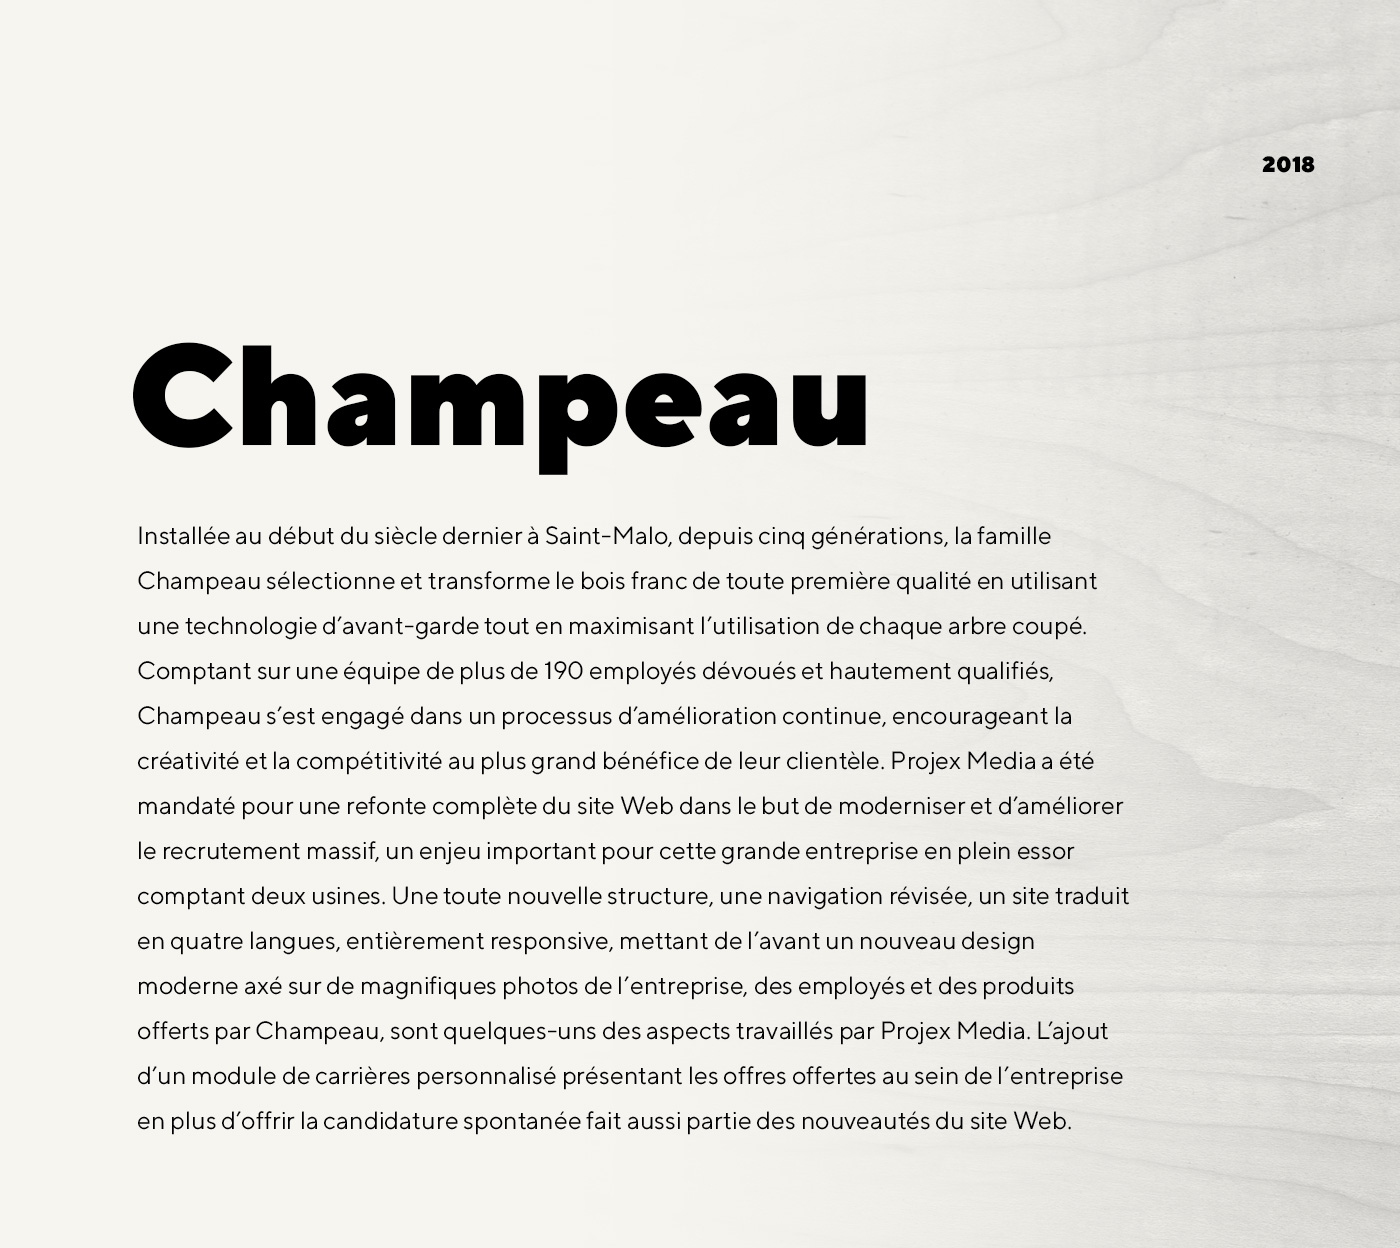 Site web bilingue pour Champeau - Composante de bois francs et sciage de bois brut / 2018 - Réalisation signée Projex Media